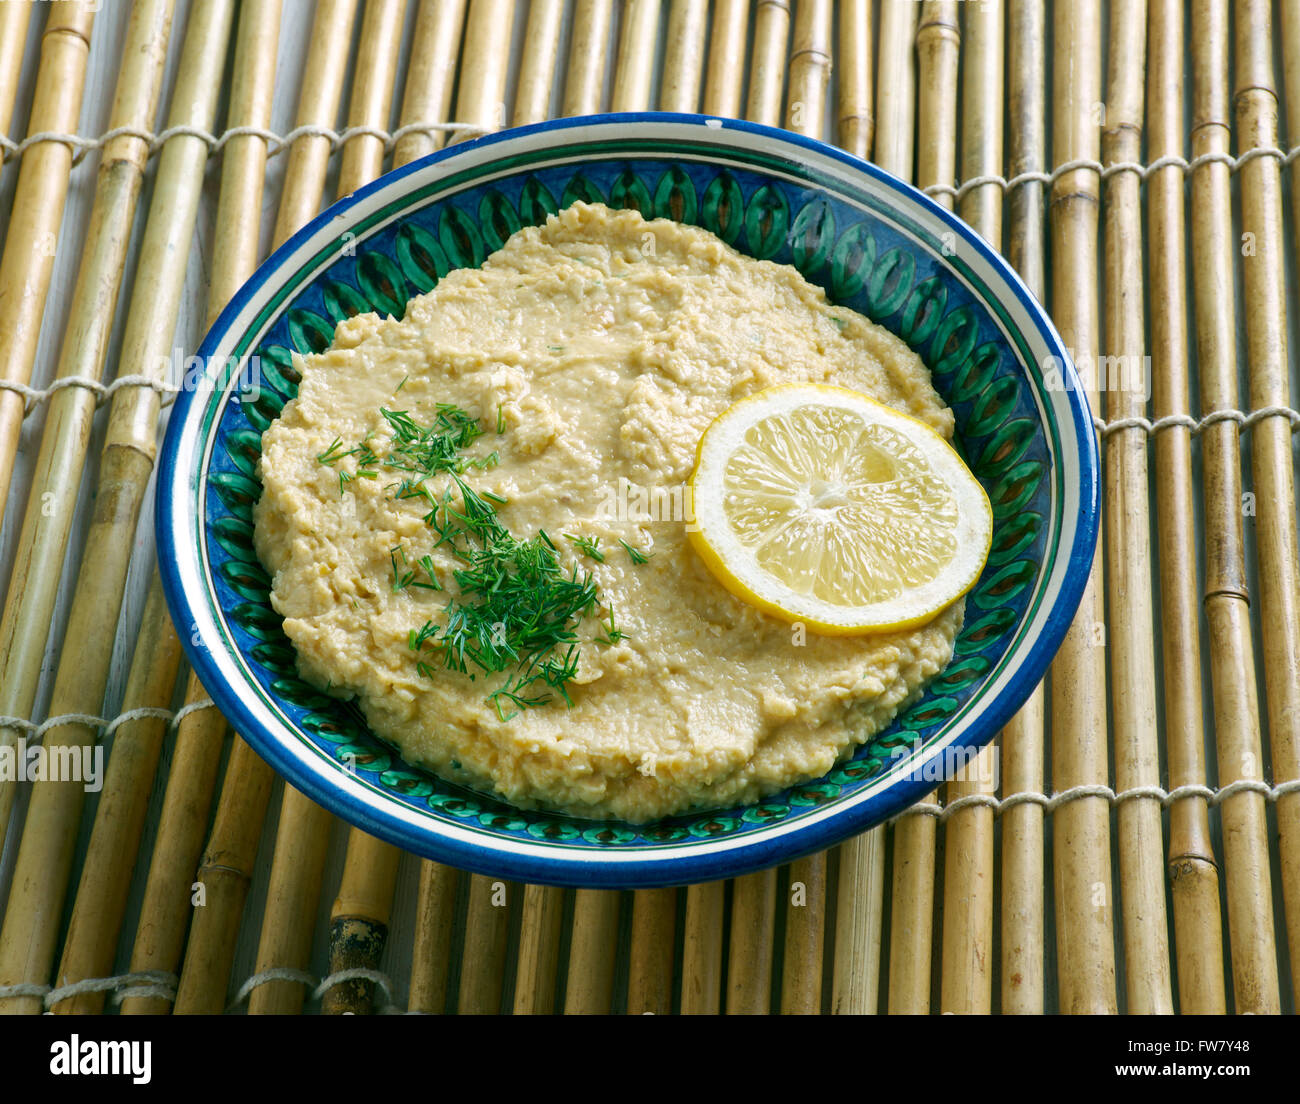 Limon Soslu Humus - Hummus mit Zitronensauce Stockfoto